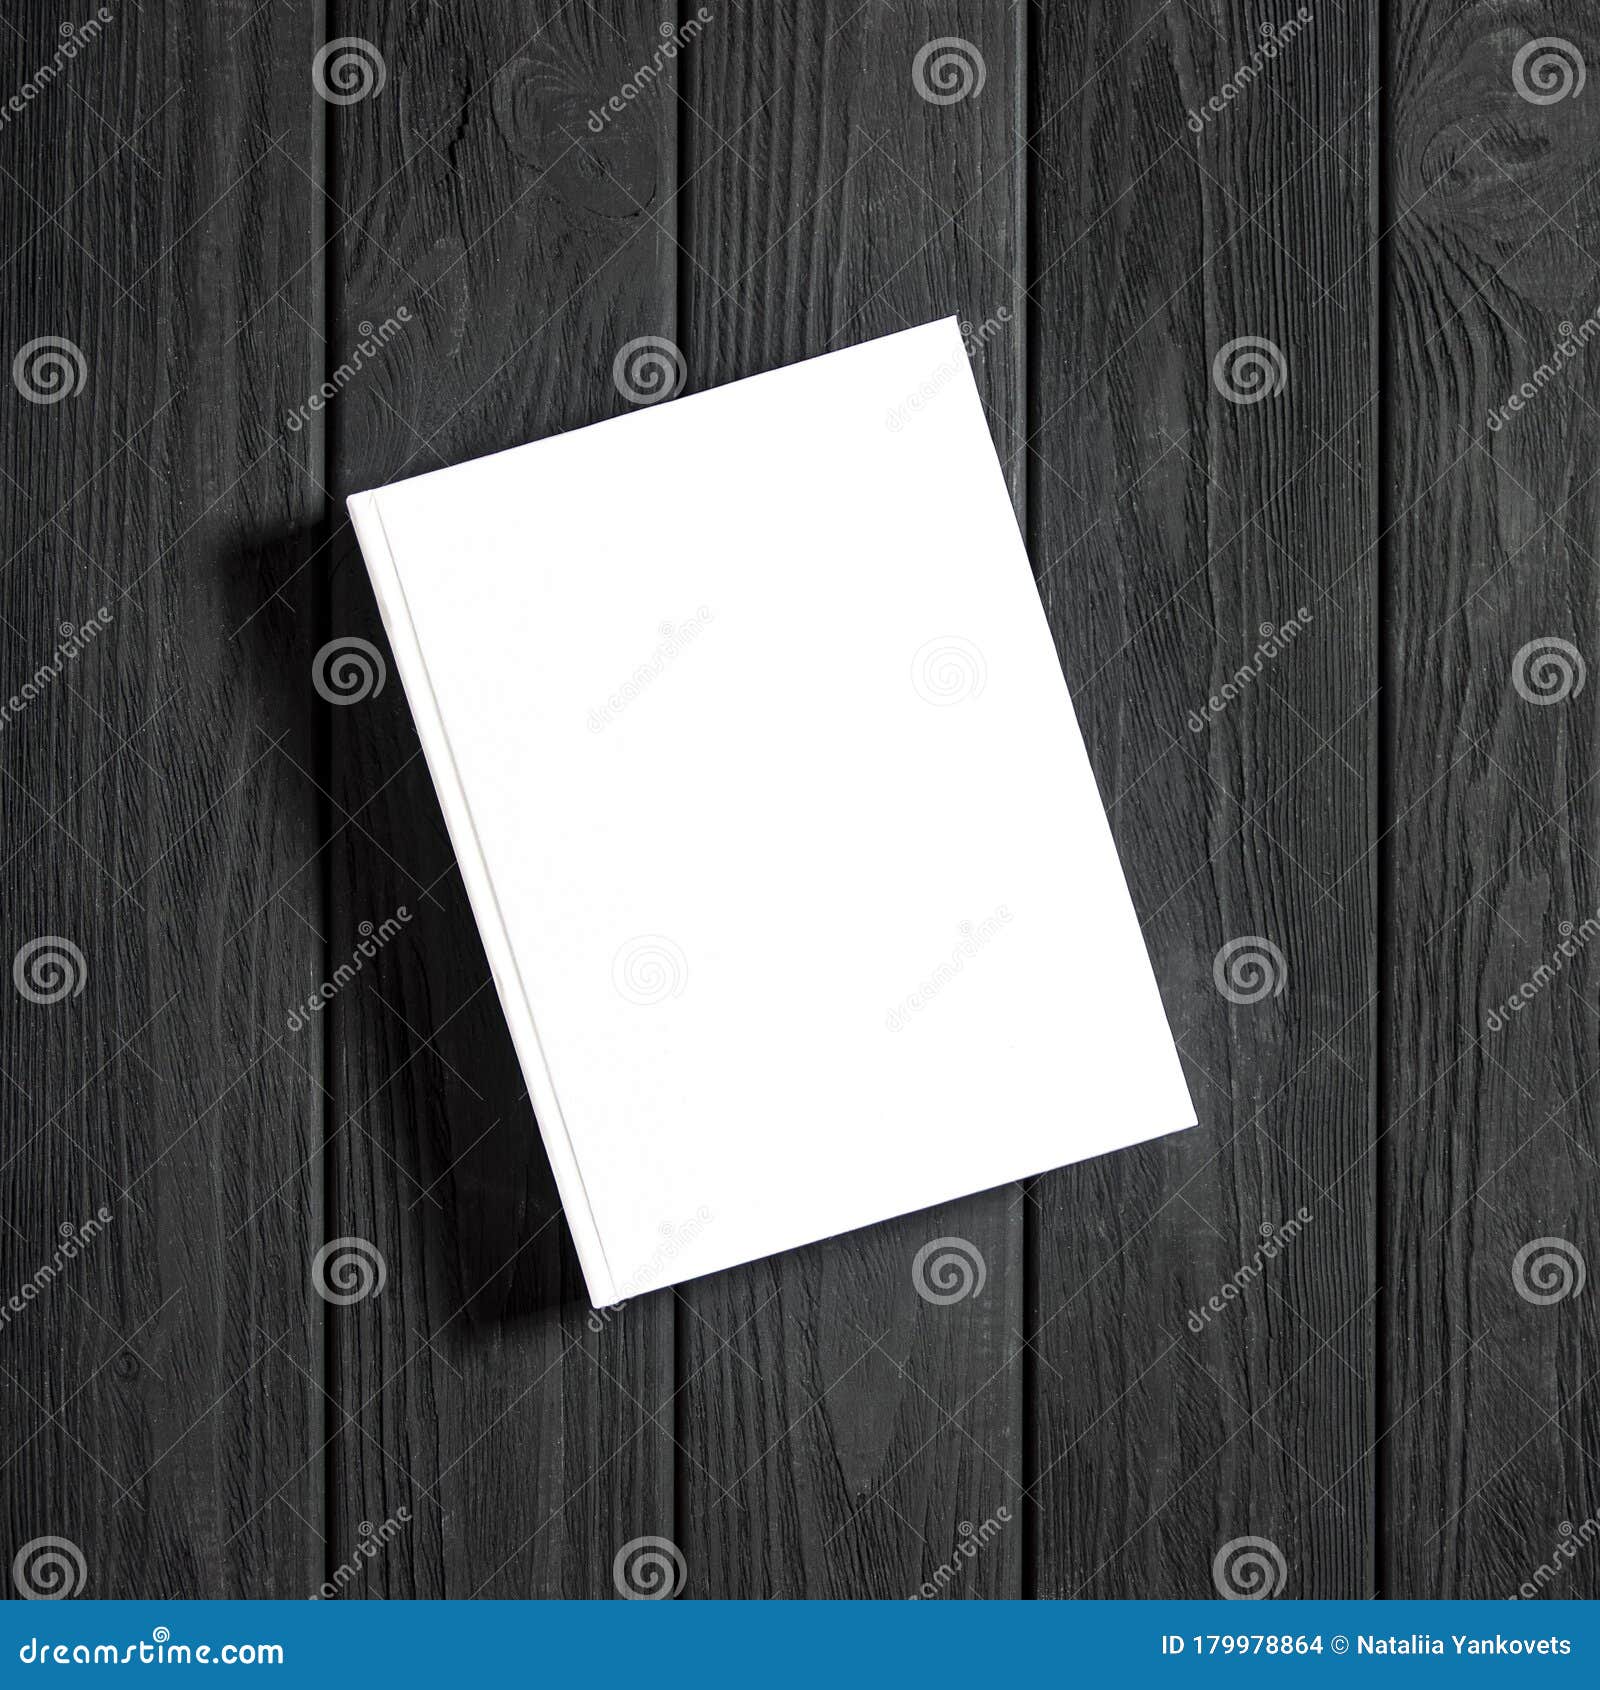 Download Mockup De Livro Branco Fechado Em Papel Branco Foto de ...